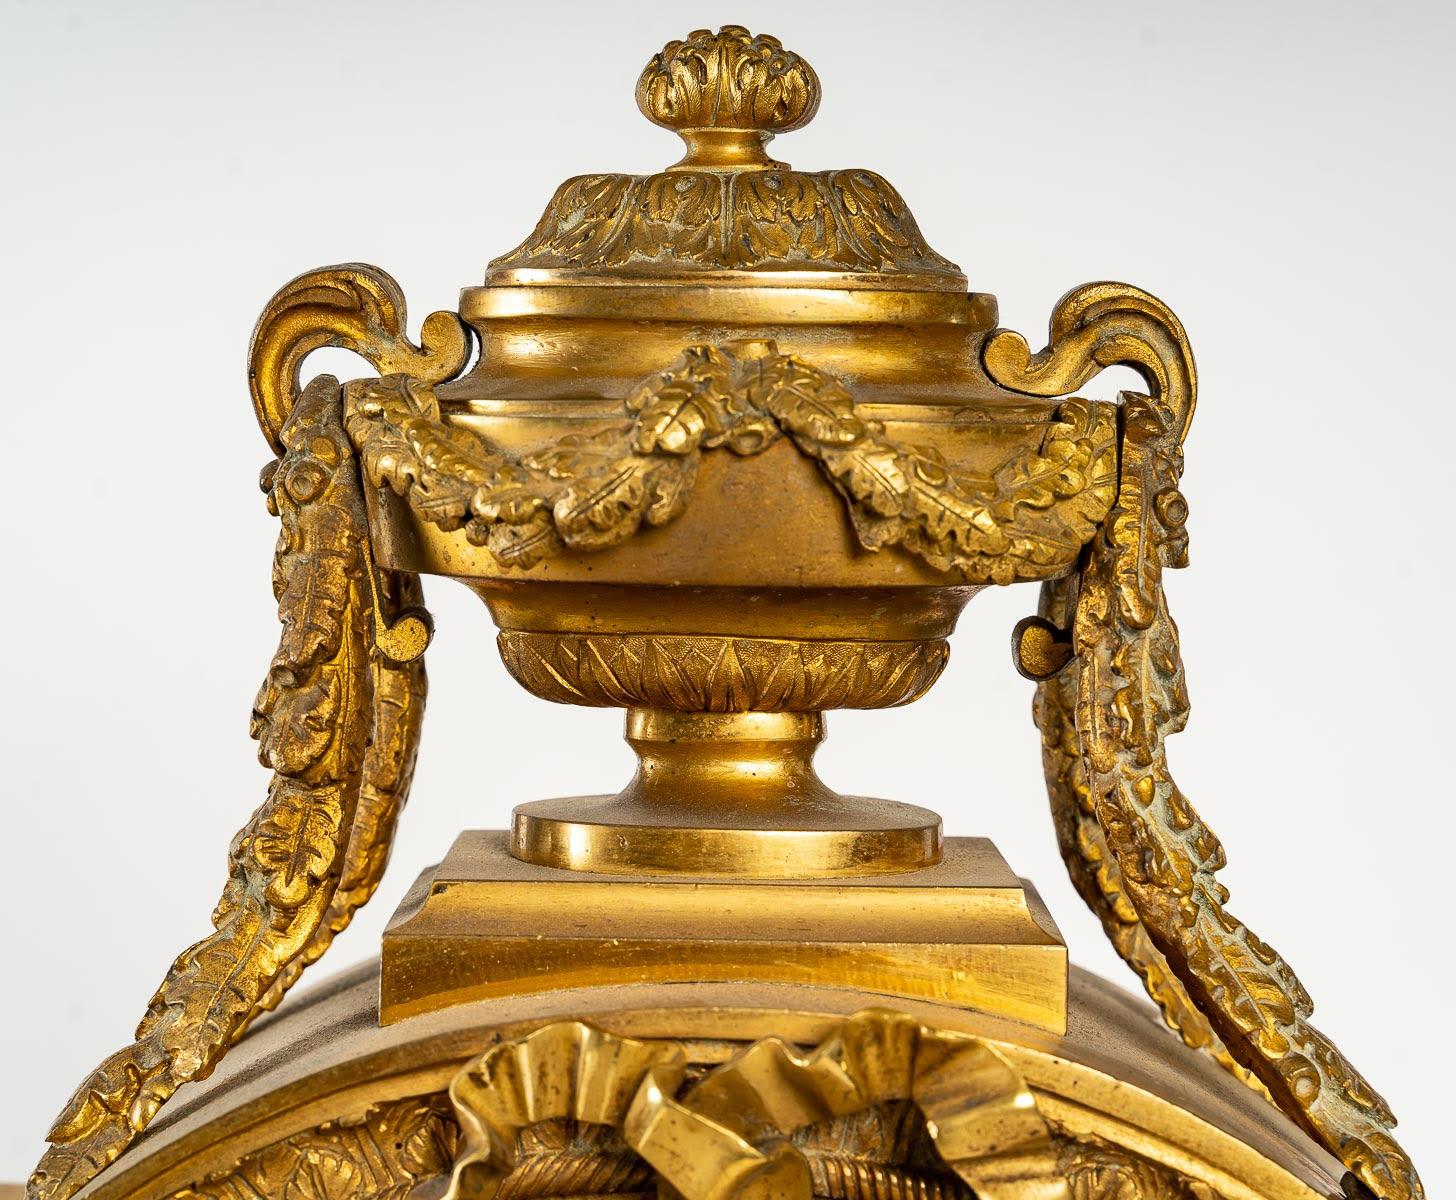 Pendule de style Louis XVI du XIXème siècle

Importante pendule du XIXe siècle de style Louis XVI, en bronze doré et porcelaine.

Dimensions : H : 59cm, L : 42cm, P : 19cm : H : 59cm, L : 42cm, P : 19cm.